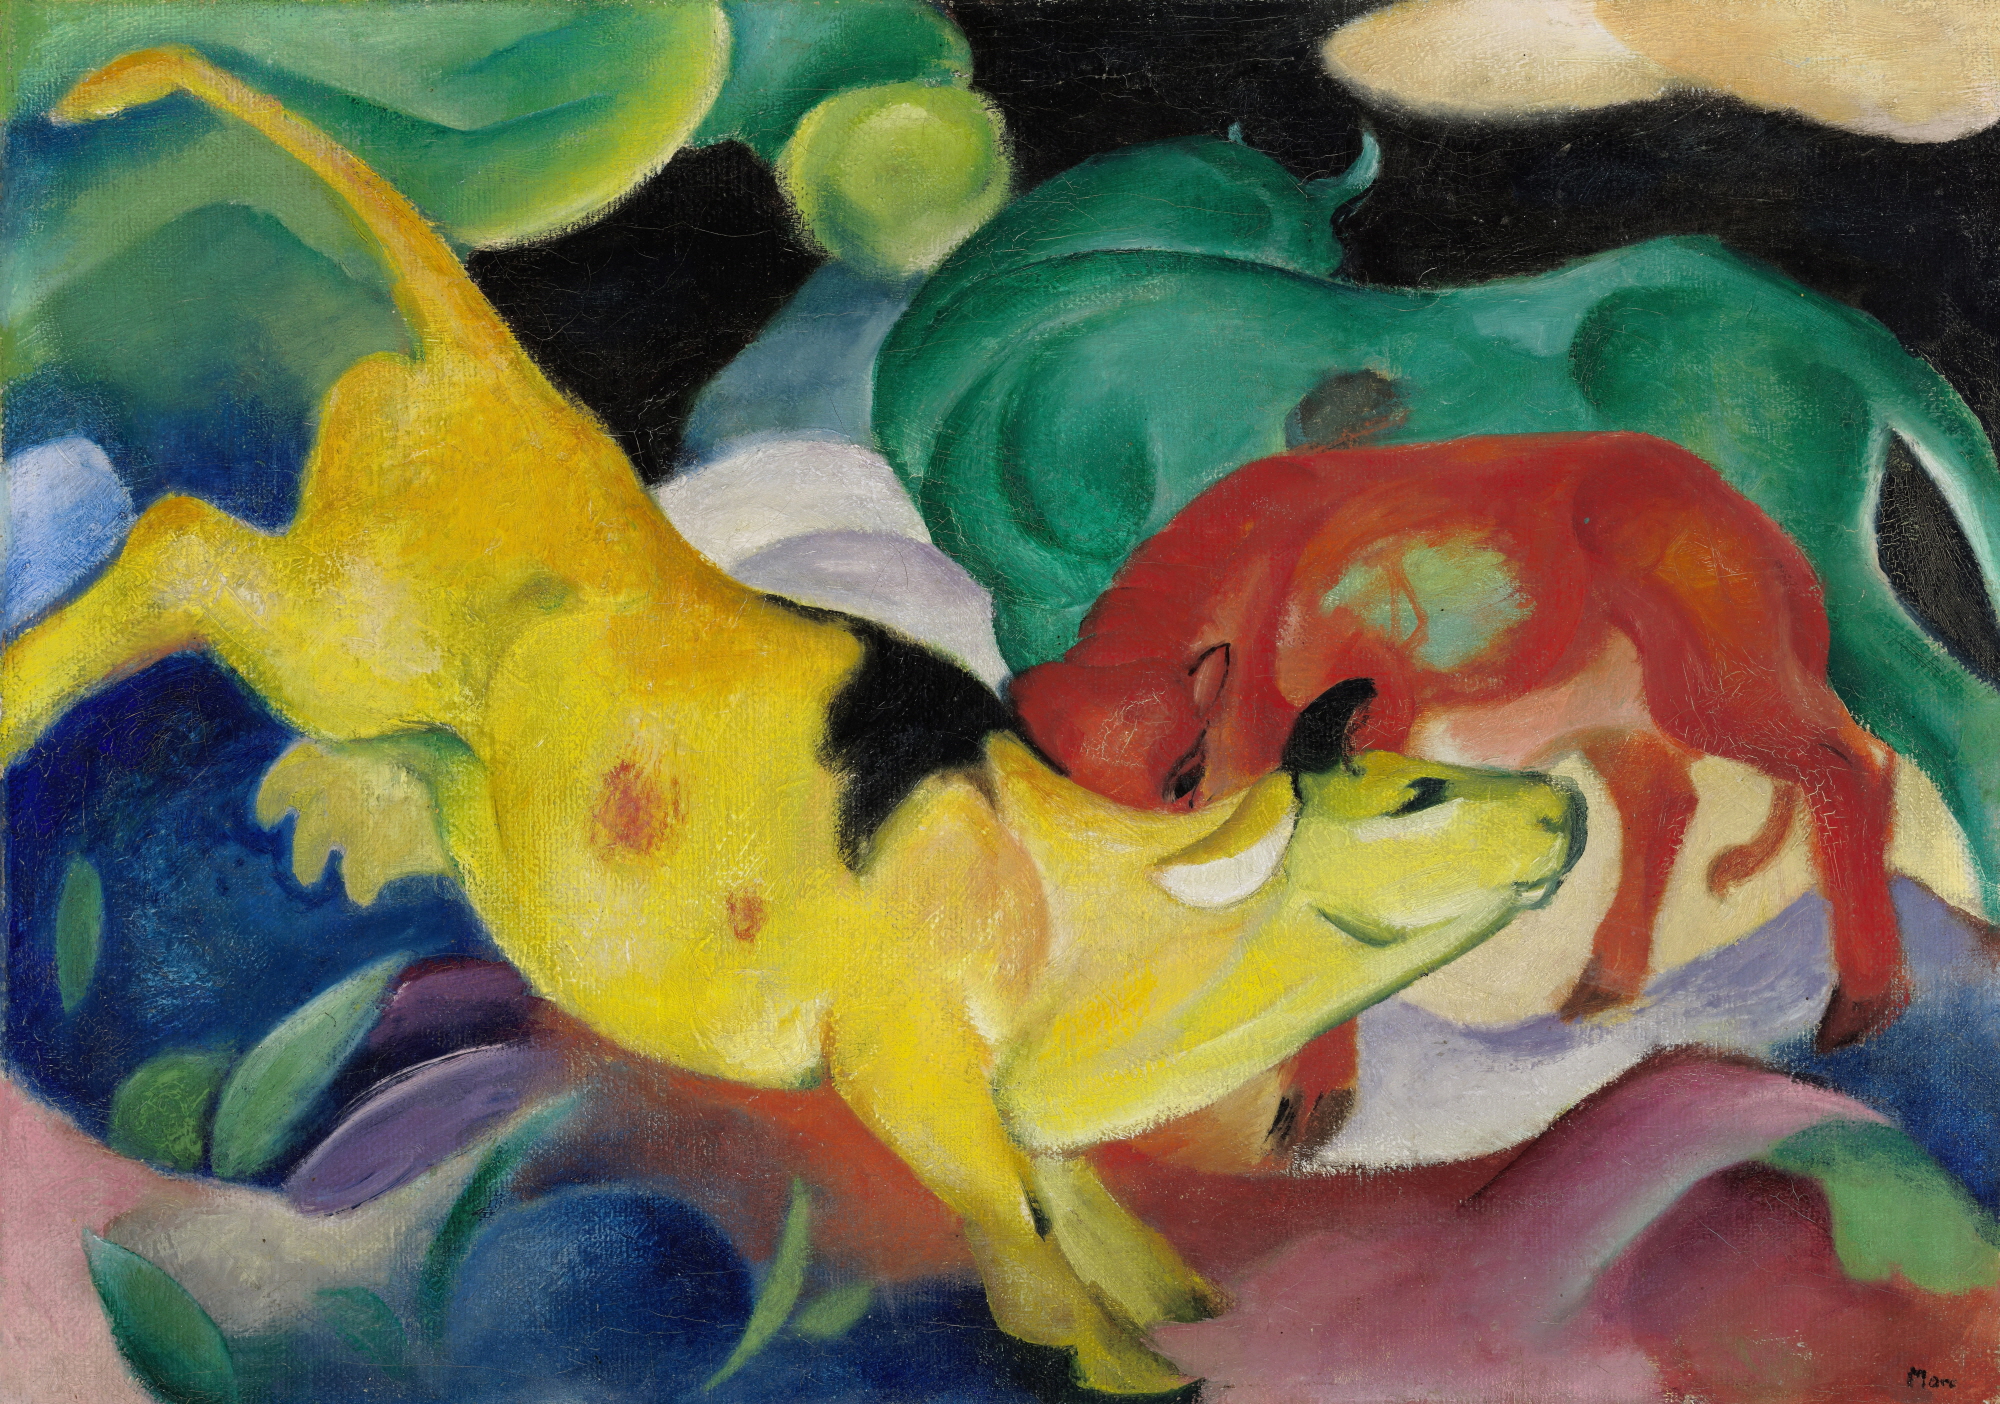 프란츠 마르크, <소, 빨강, 초록, 노랑>, 1911, Lenbachhaus Munich